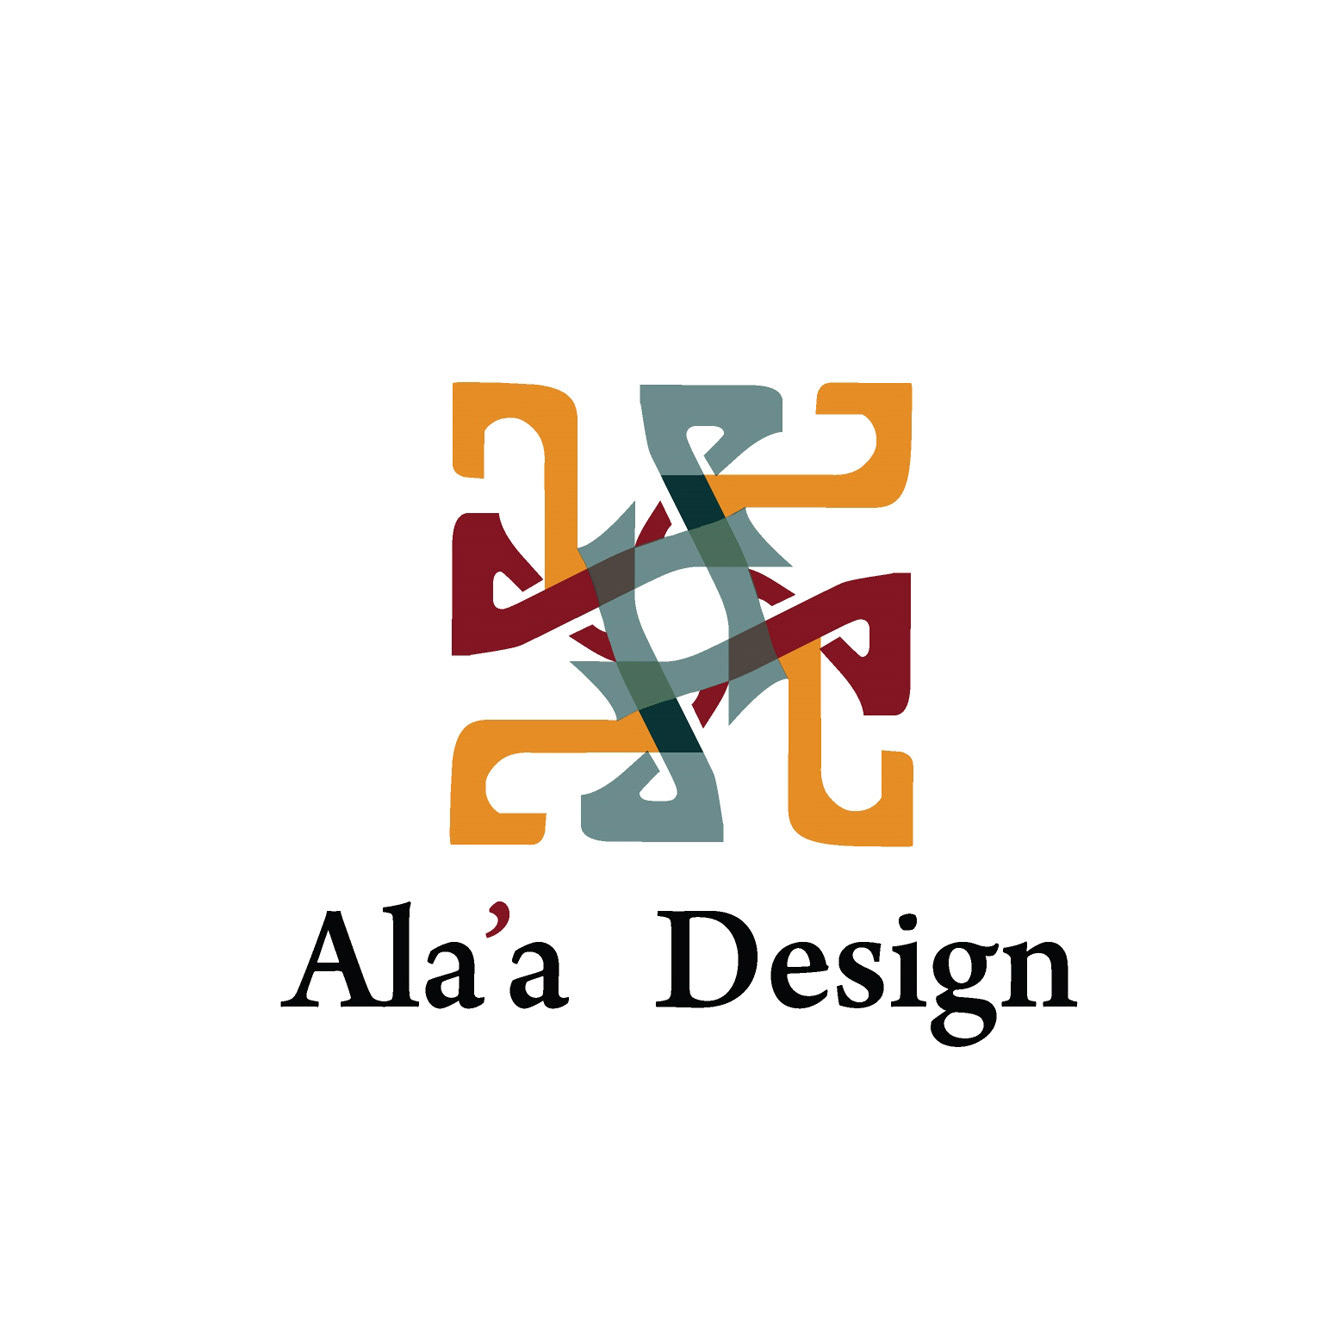 Alaa Alharbi